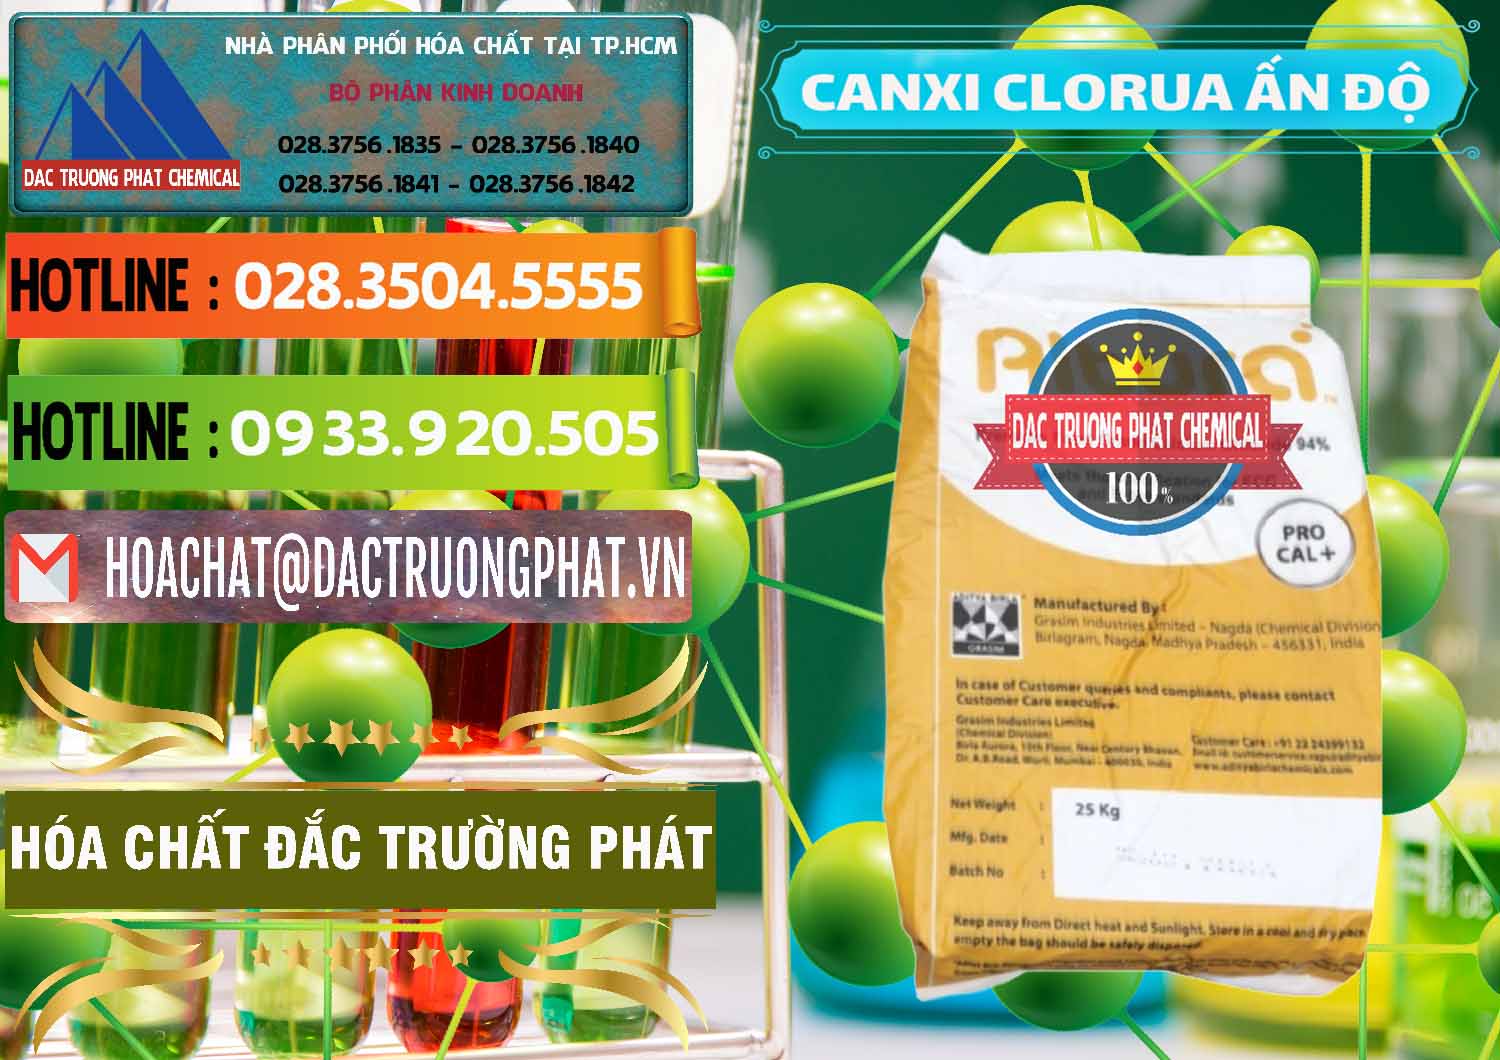 Công ty chuyên bán _ cung cấp CaCl2 – Canxi Clorua Food Grade Altura Aditya Birla Grasim Ấn Độ India - 0436 - Chuyên cung cấp ( phân phối ) hóa chất tại TP.HCM - cungcaphoachat.com.vn